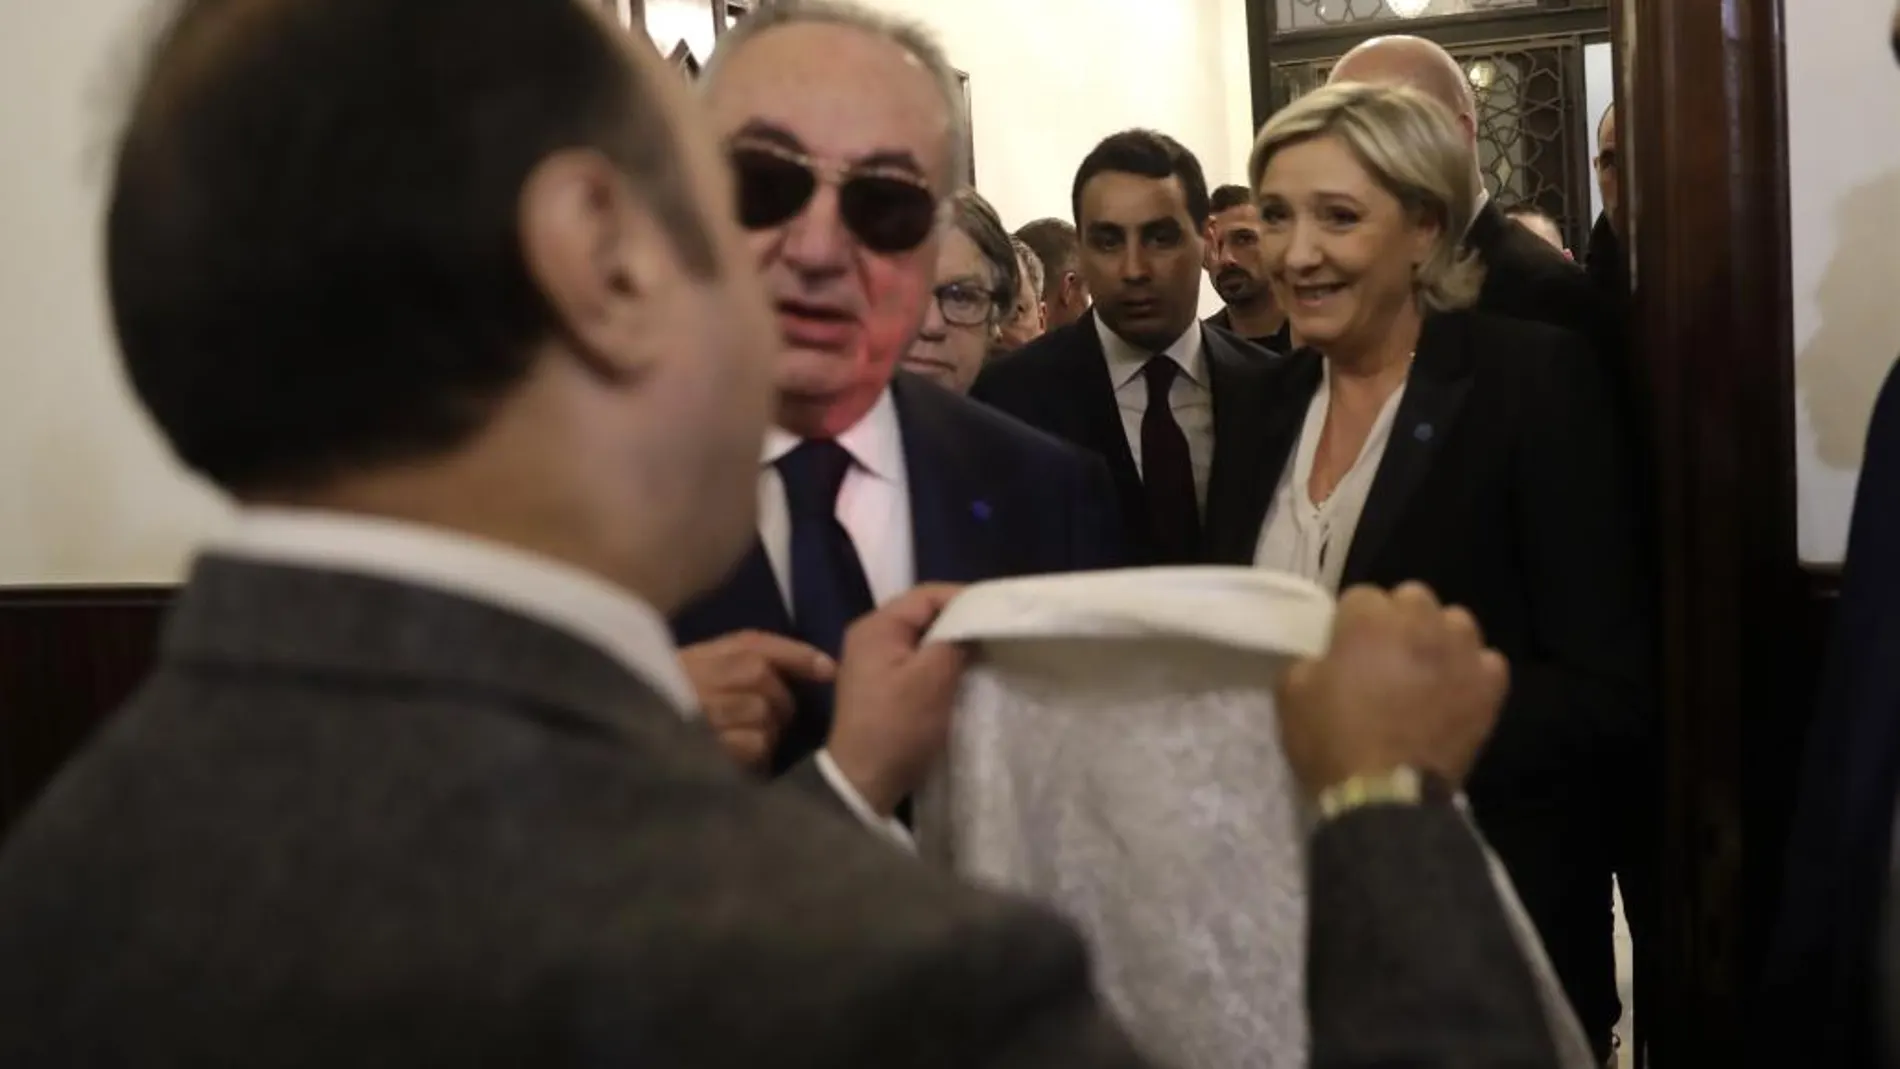 Un ayudante del Gran Mufti del Líbano Jeque Abdel-Latif Derian intentó que Le Pen cubriera su cabeza a lo que ésta se negó.